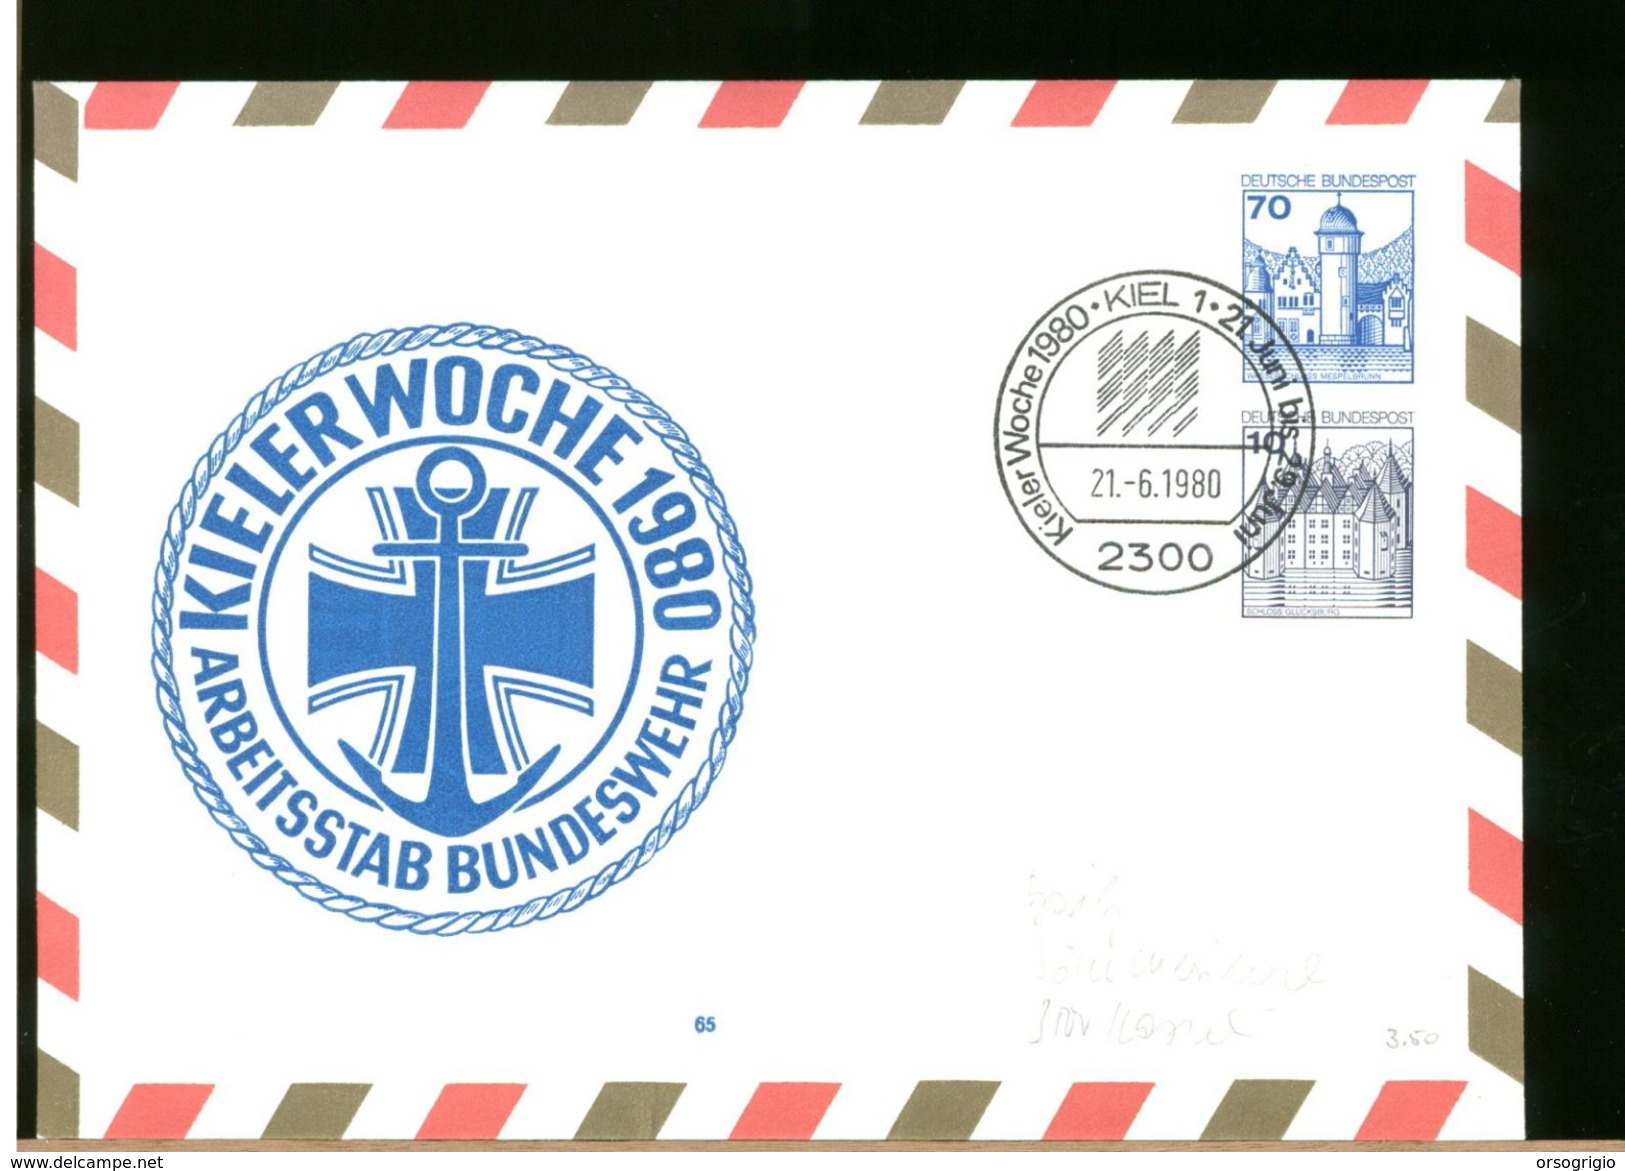 GERMANY - BUNDESWEHR - KIEL WOCHE 1980 - MARINE KUTT REGATTA - Sobres Privados - Nuevos